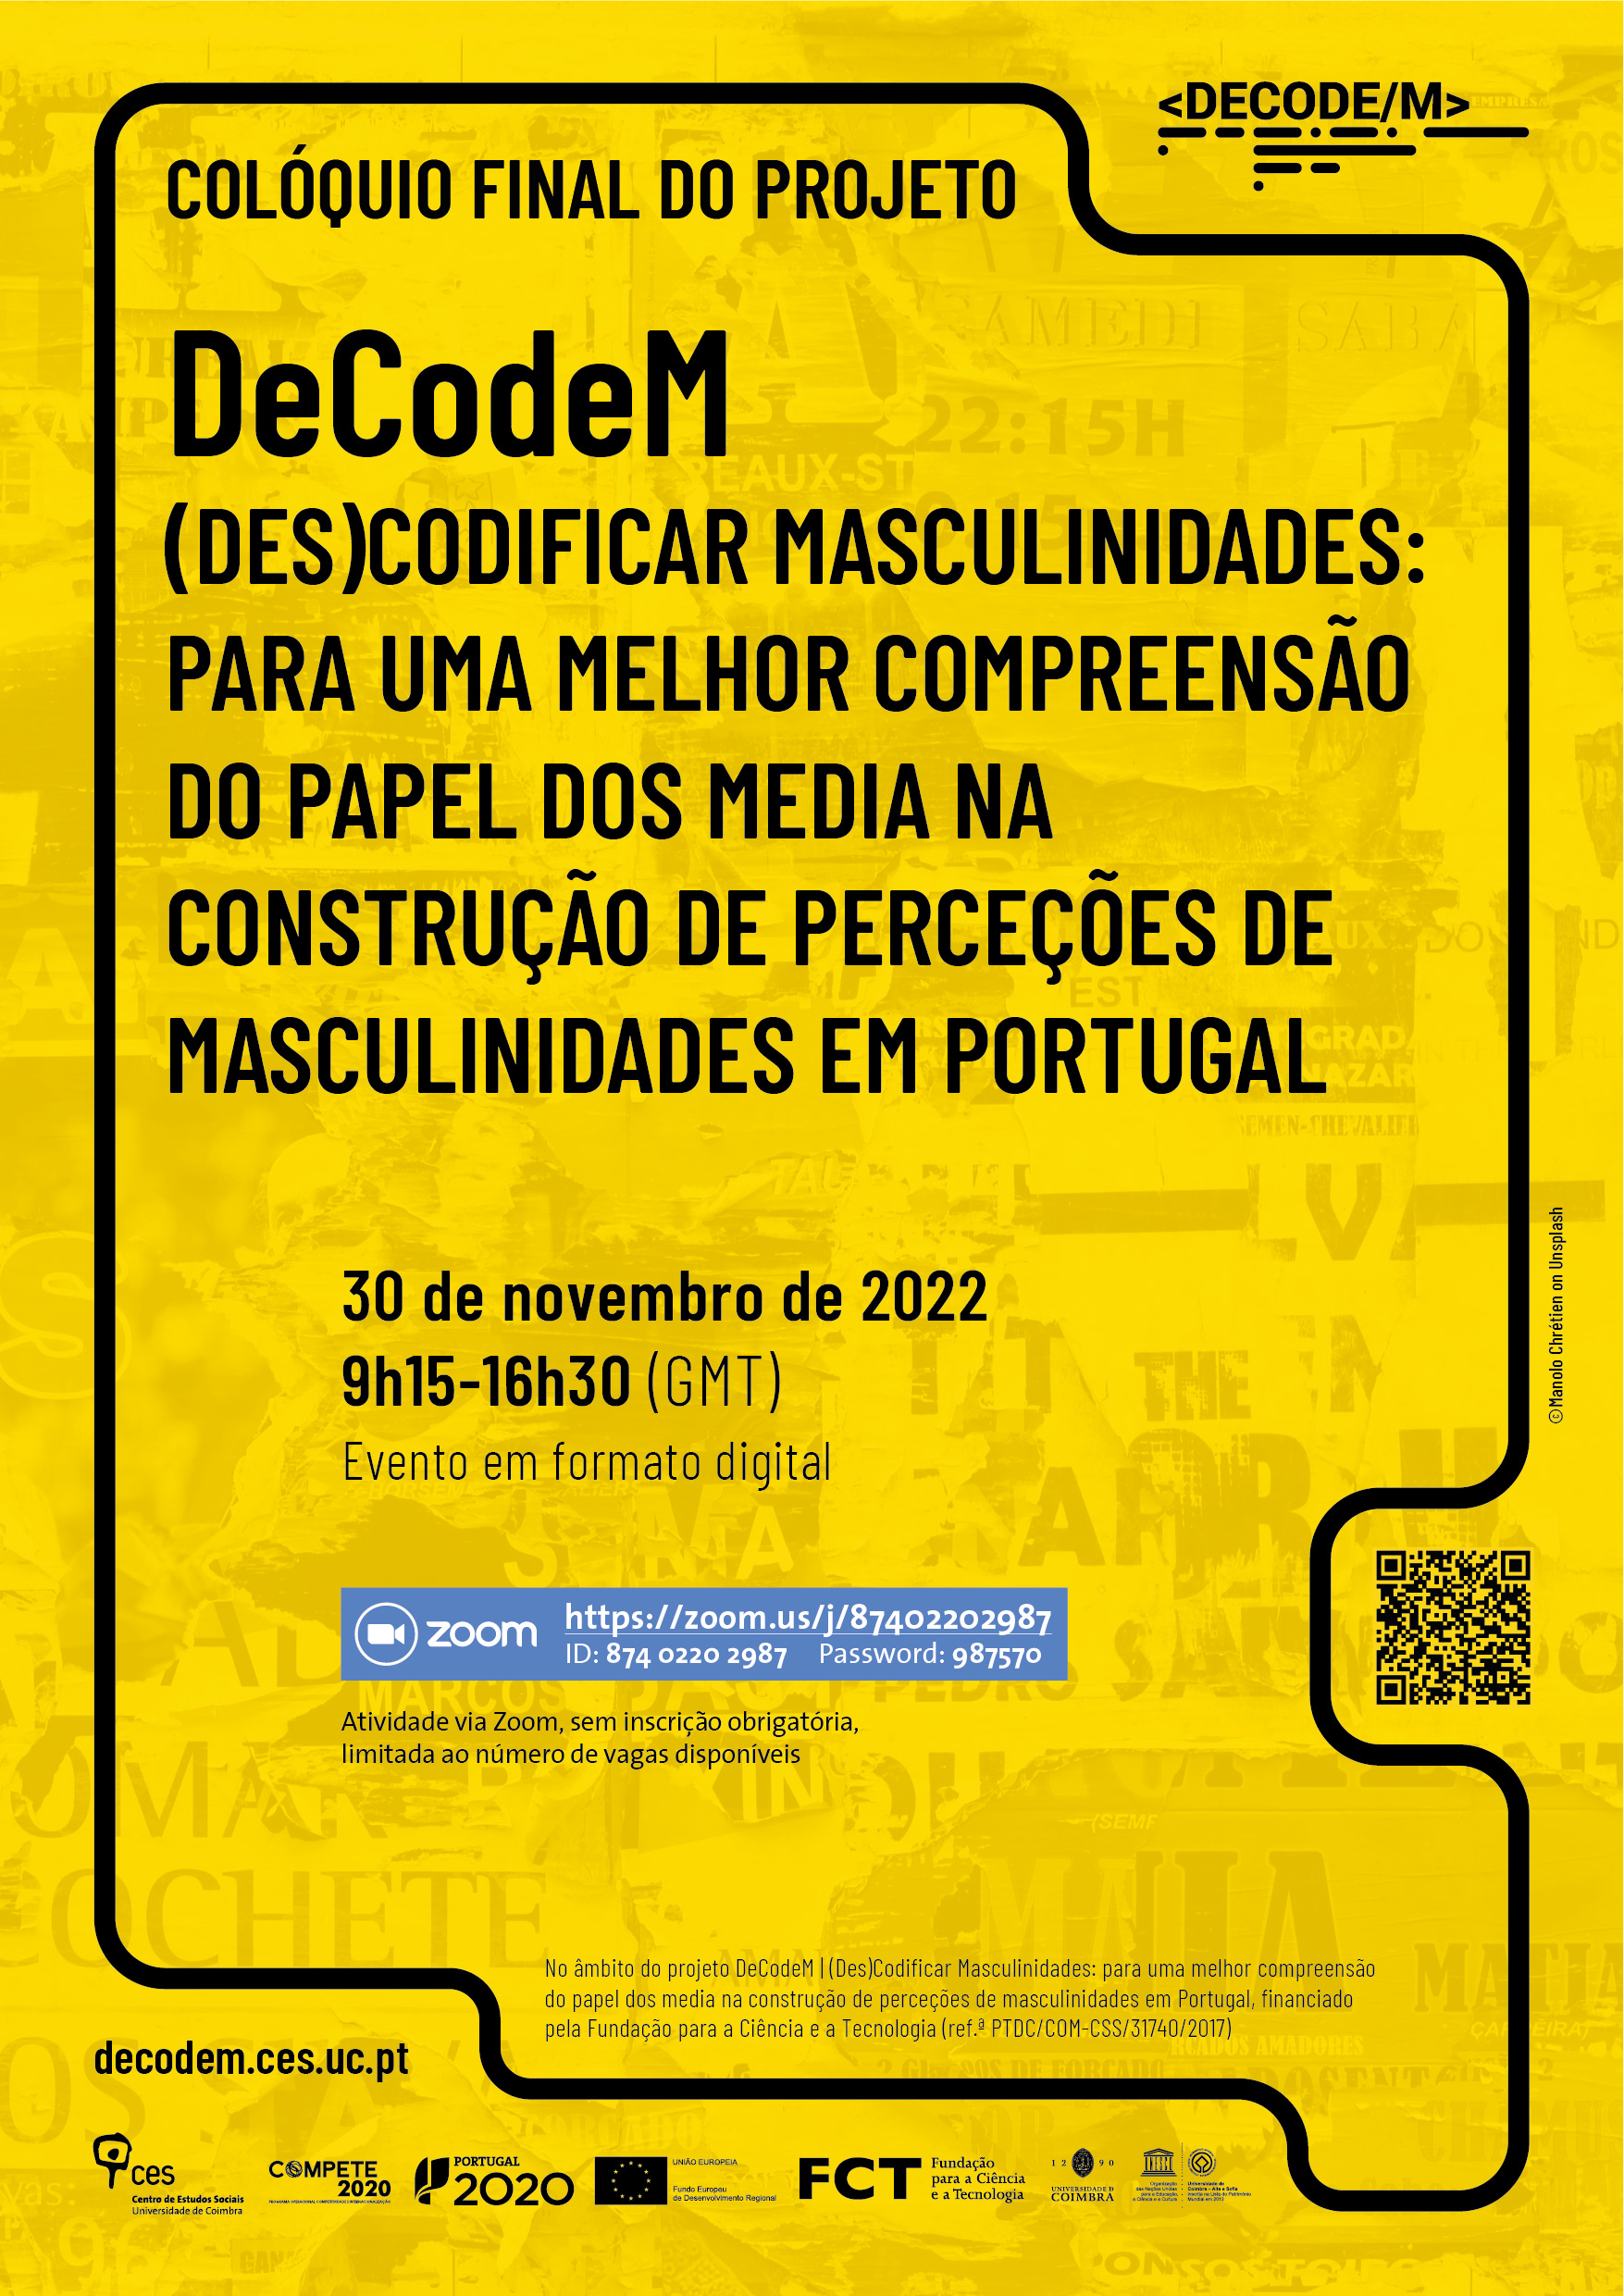 DeCodeM | (Des)Codificar Masculinidades: para uma melhor compreensão do papel dos media na construção de perceções de masculinidades em Portugal<span id="edit_40996"><script>$(function() { $('#edit_40996').load( "/myces/user/editobj.php?tipo=evento&id=40996" ); });</script></span>